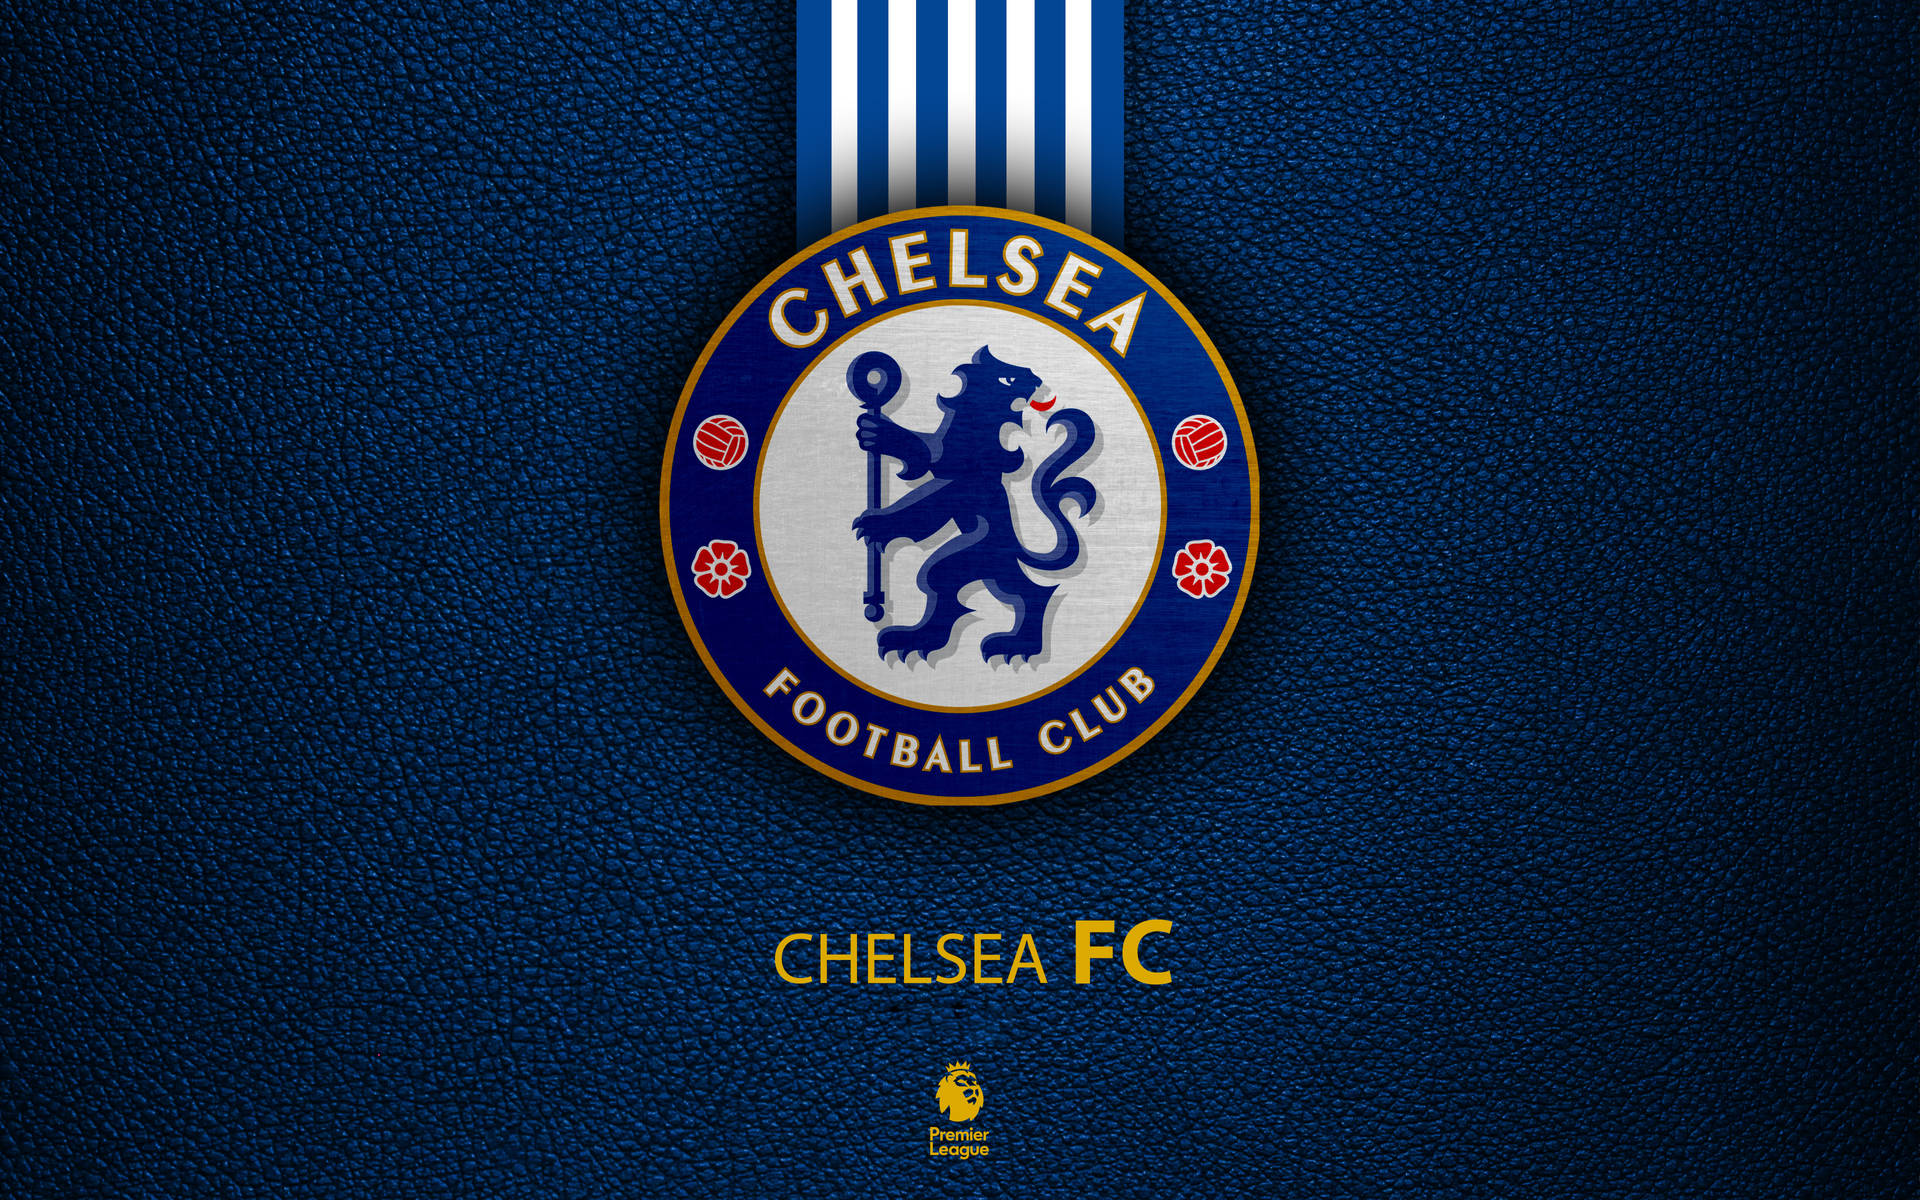 Chelsea Fc Logo For Premier League Background